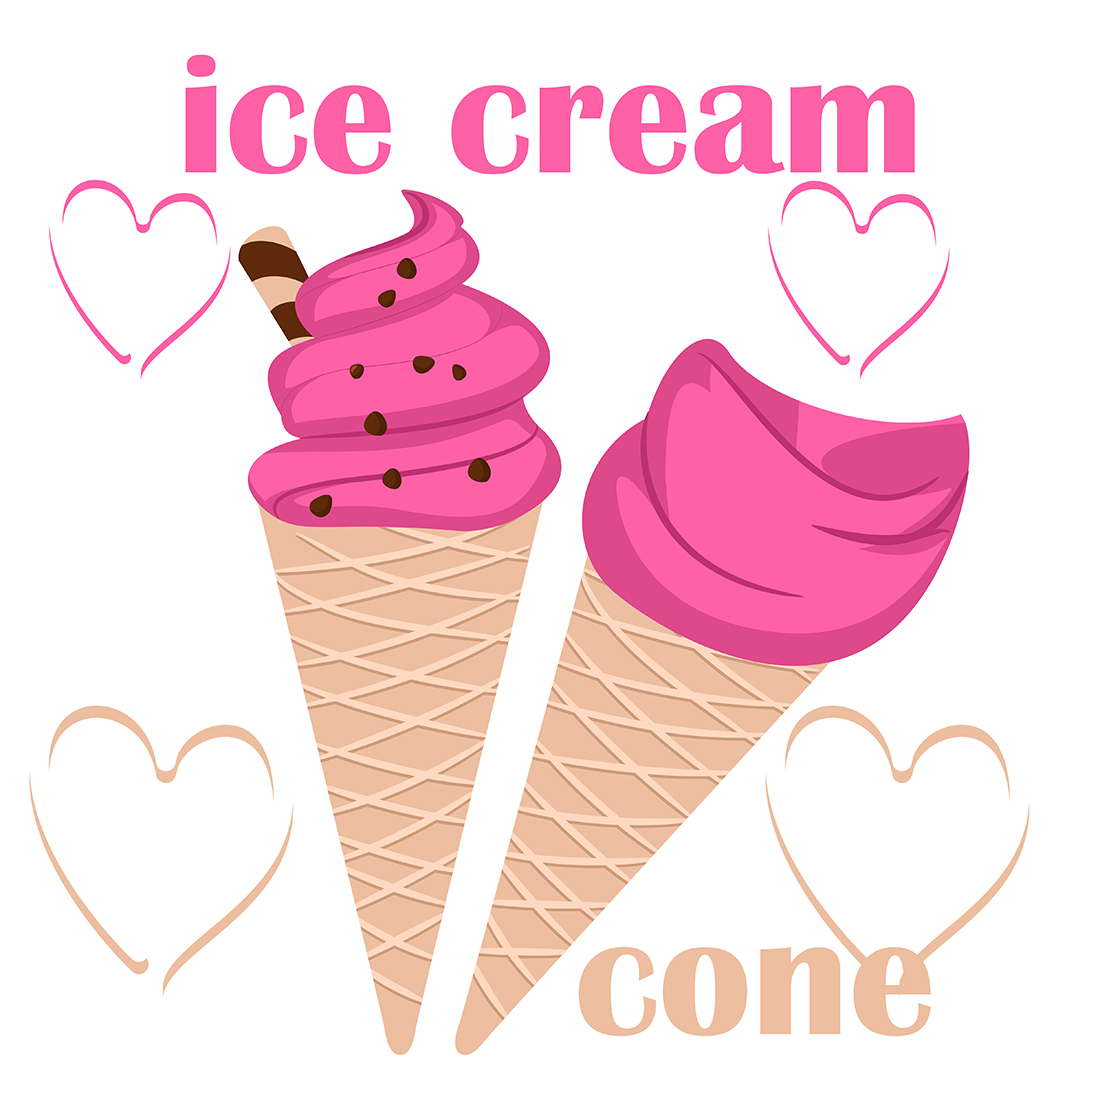 Ice cream cone, Ice cream in a waffle cone 2 templates preview image.